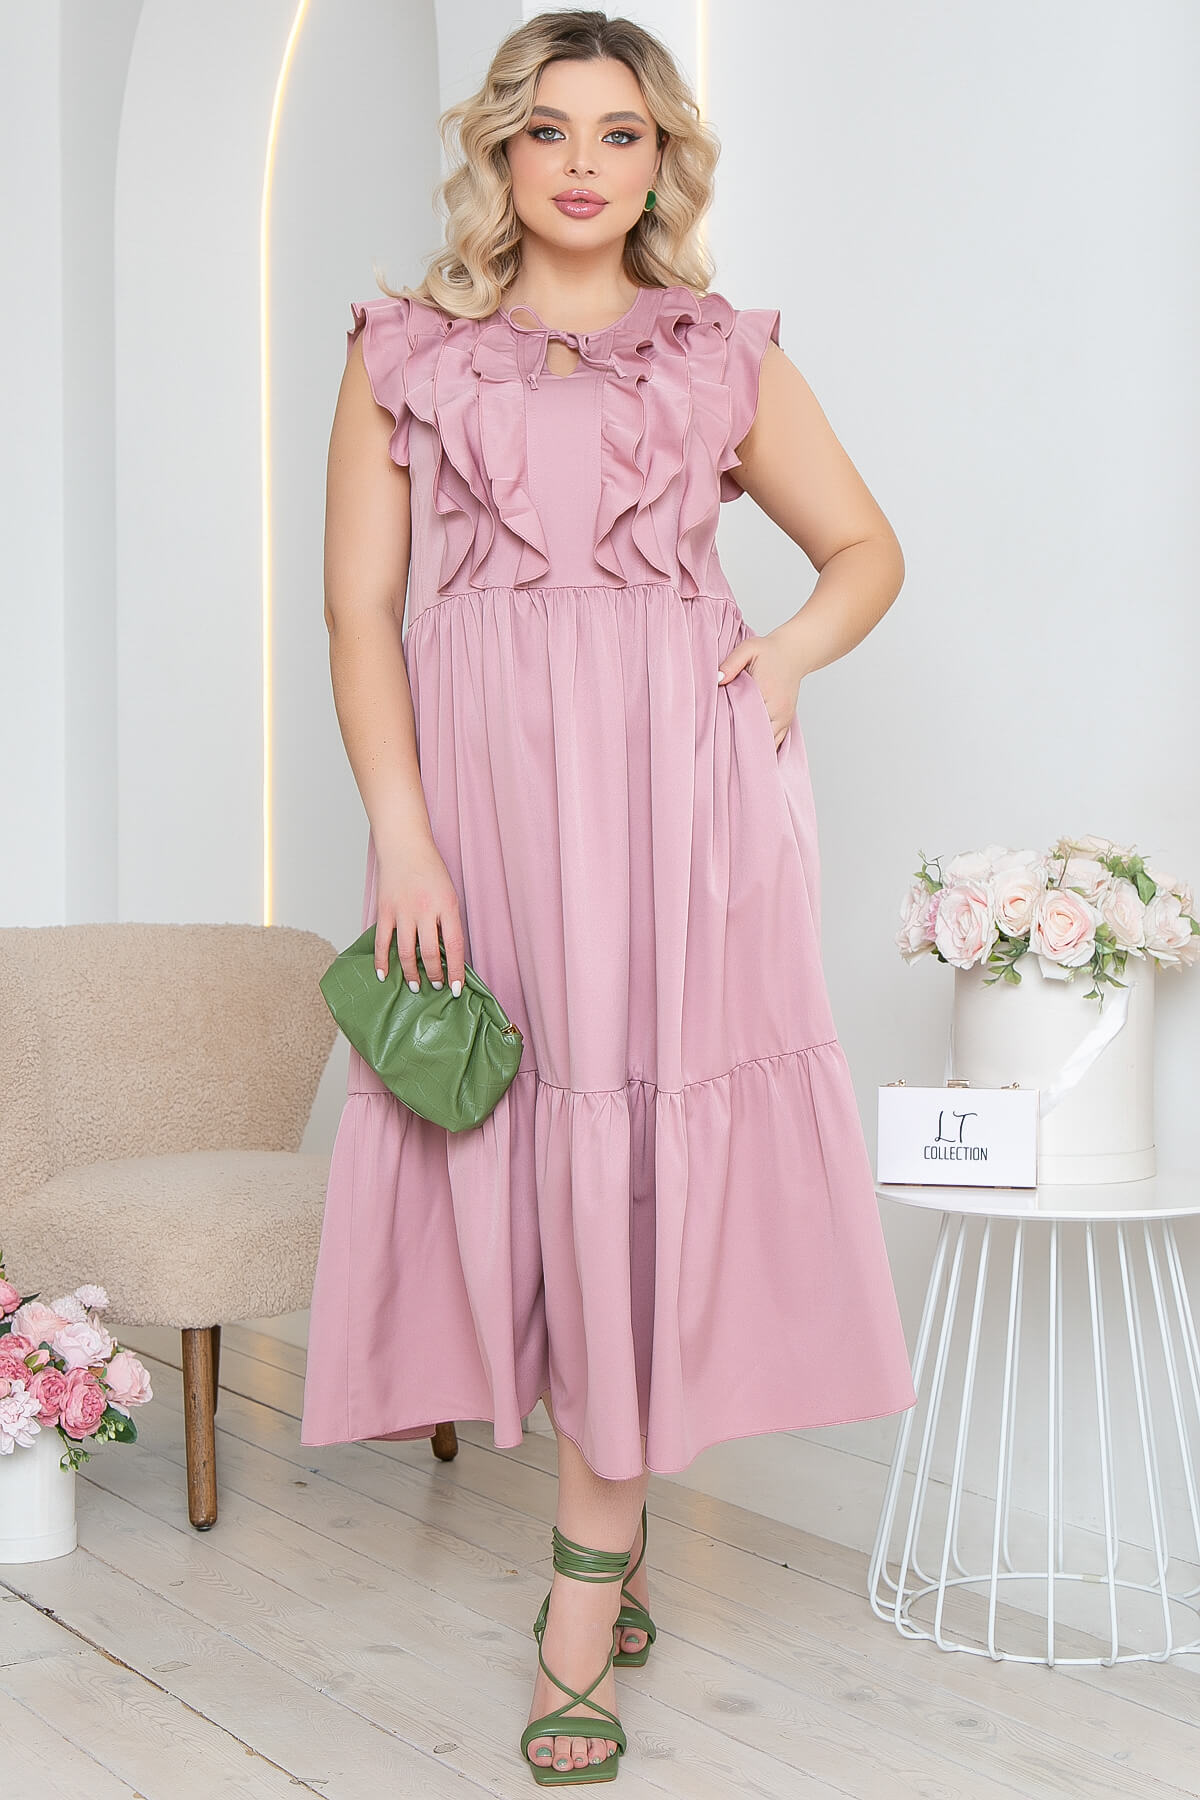 Платье женское LT Collection Айза розовое 54 RU